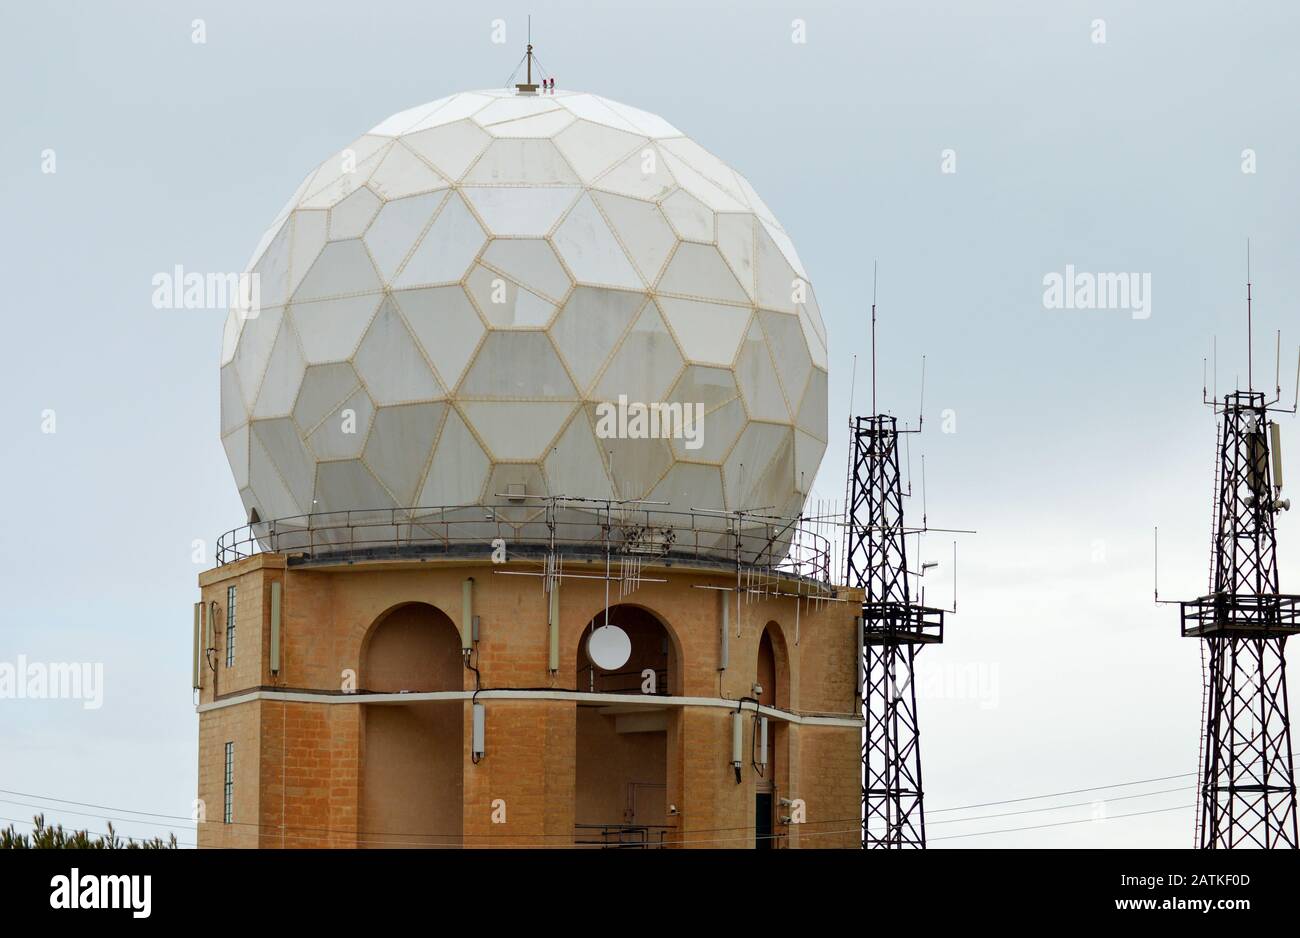 Die Radarstation in Dingli, Malta, wurde im März 1939 als erste Radarstation außerhalb Großbritanniens eingerichtet (Air Minsitry Experimental Station (AME Stockfoto